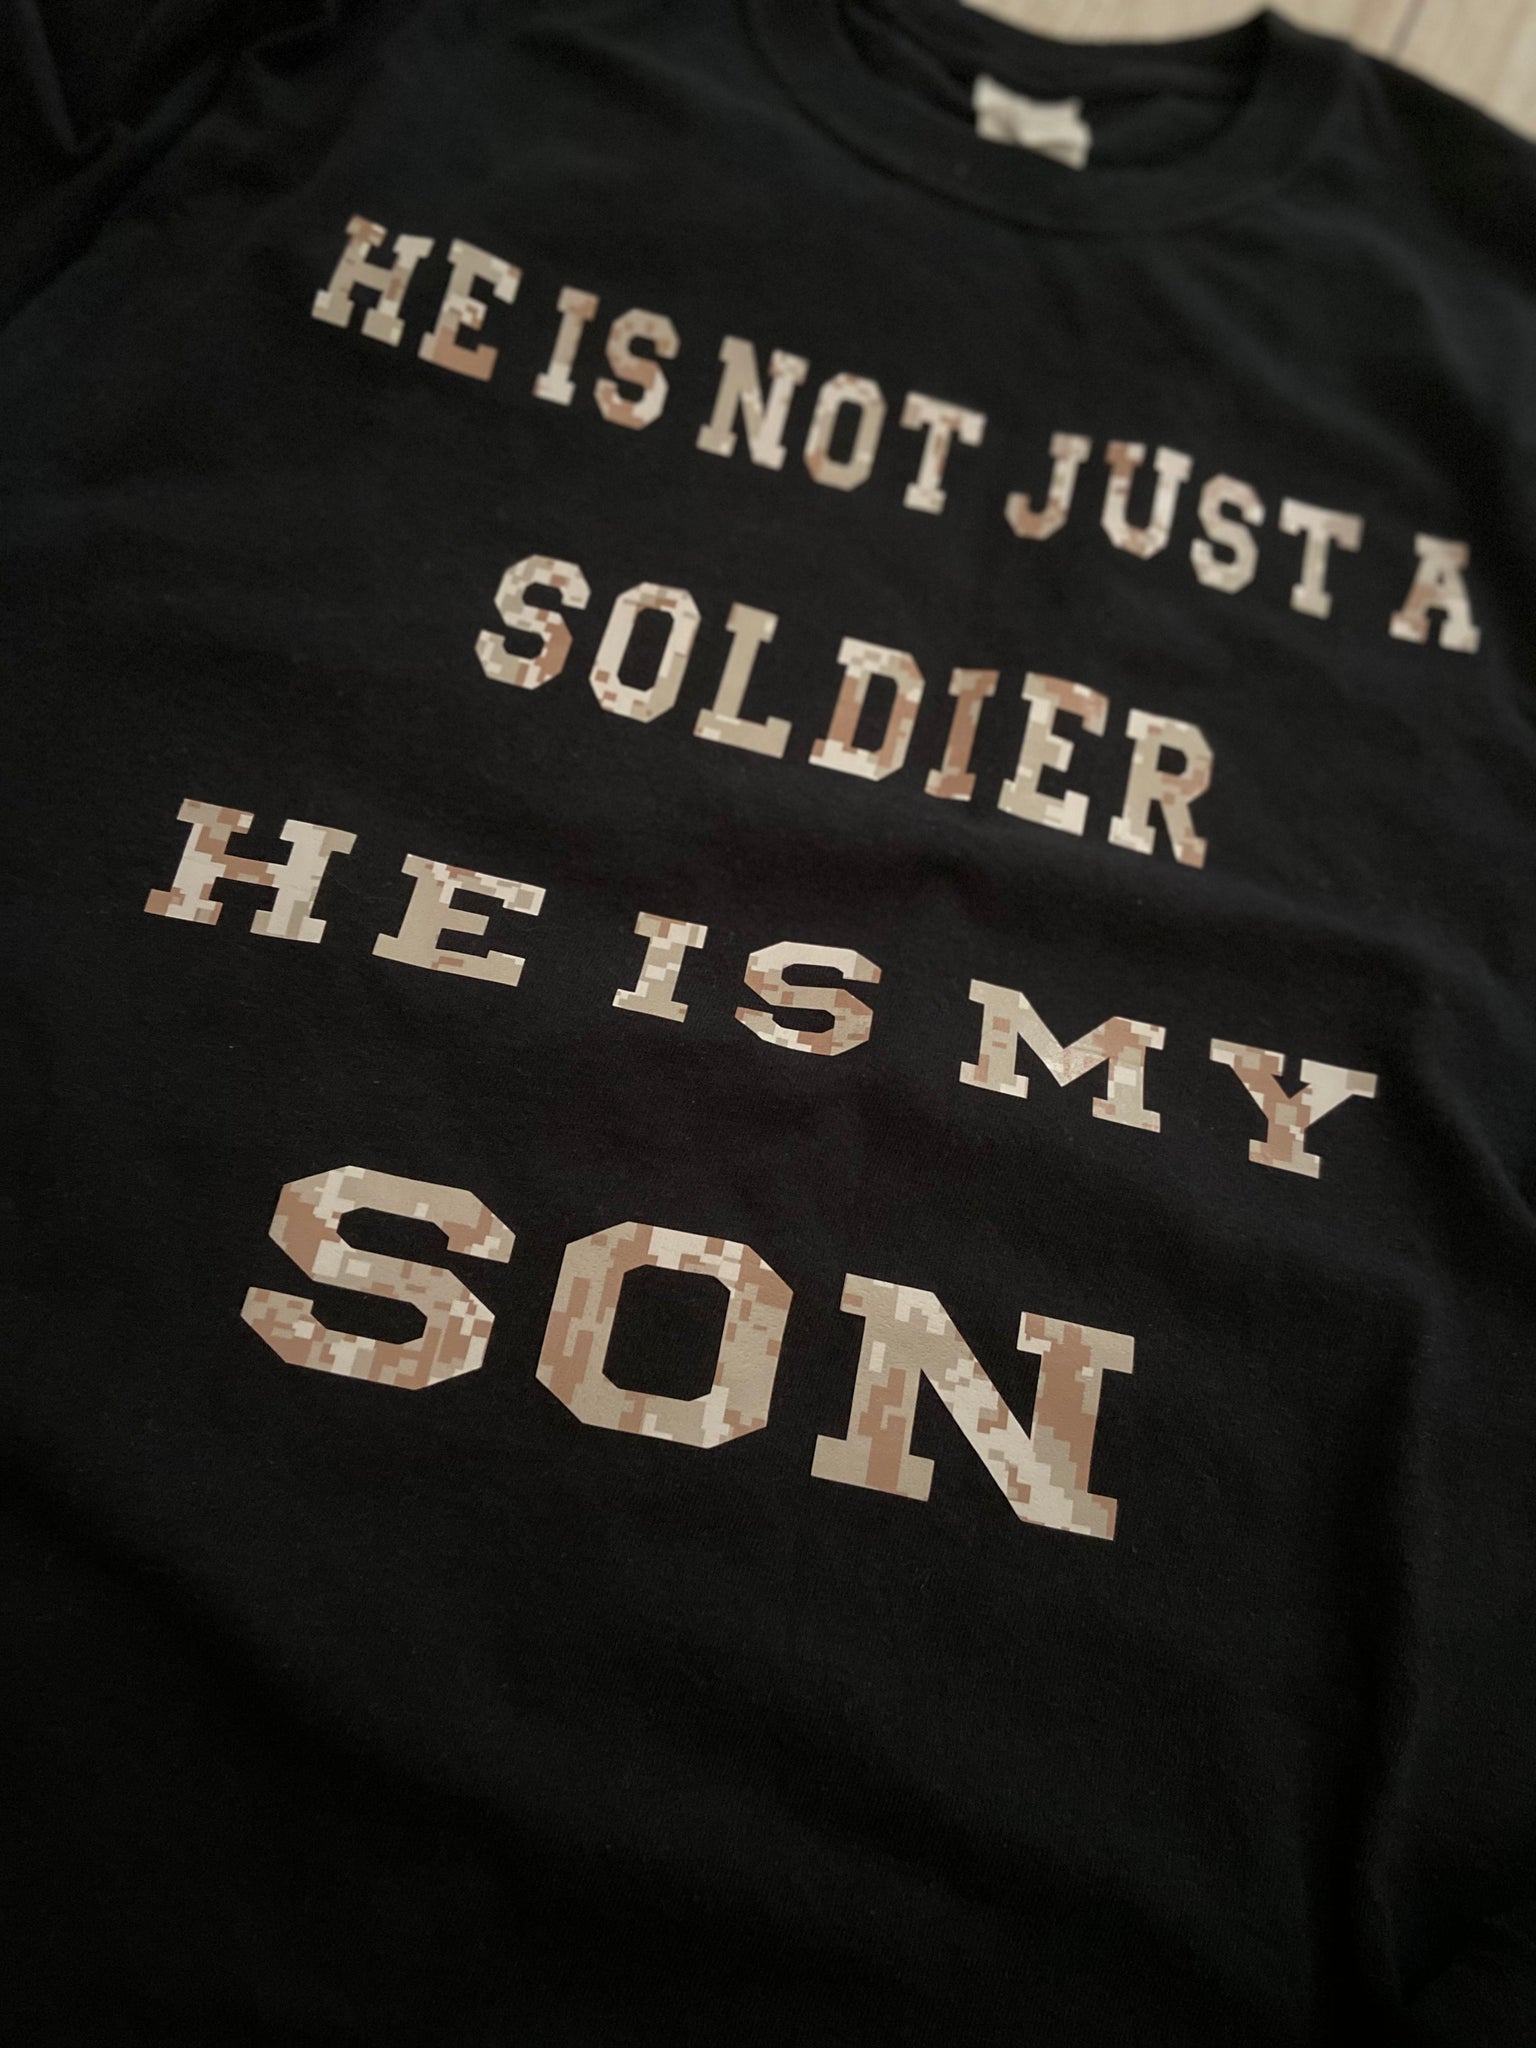 Son Soldier